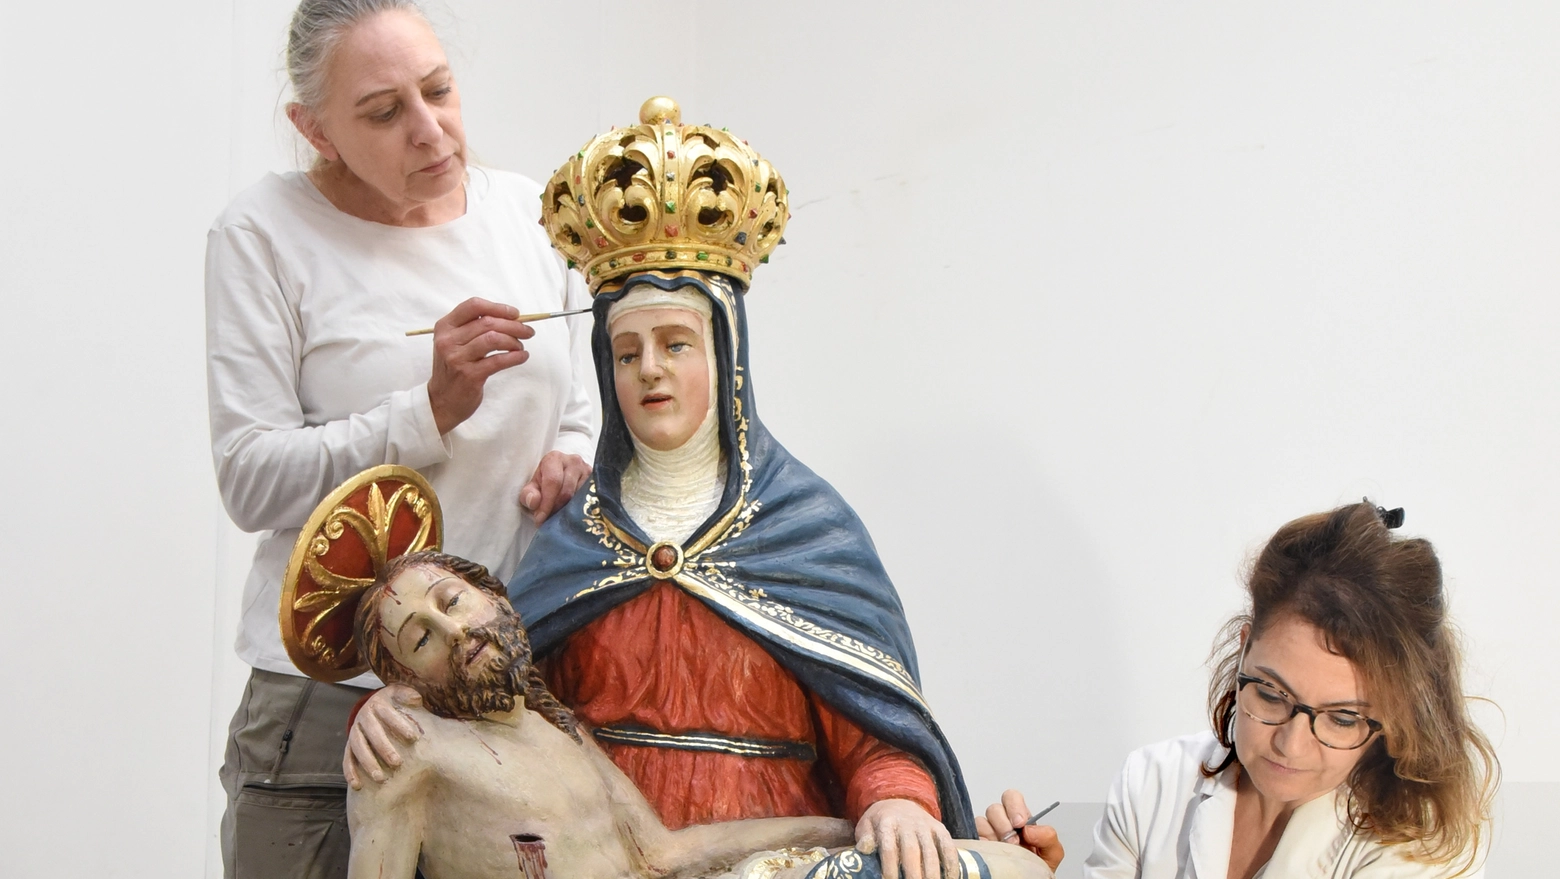 Gli ultimi ritocchi a conclusione dell'intervento sulla statua della Madonna Addolorata